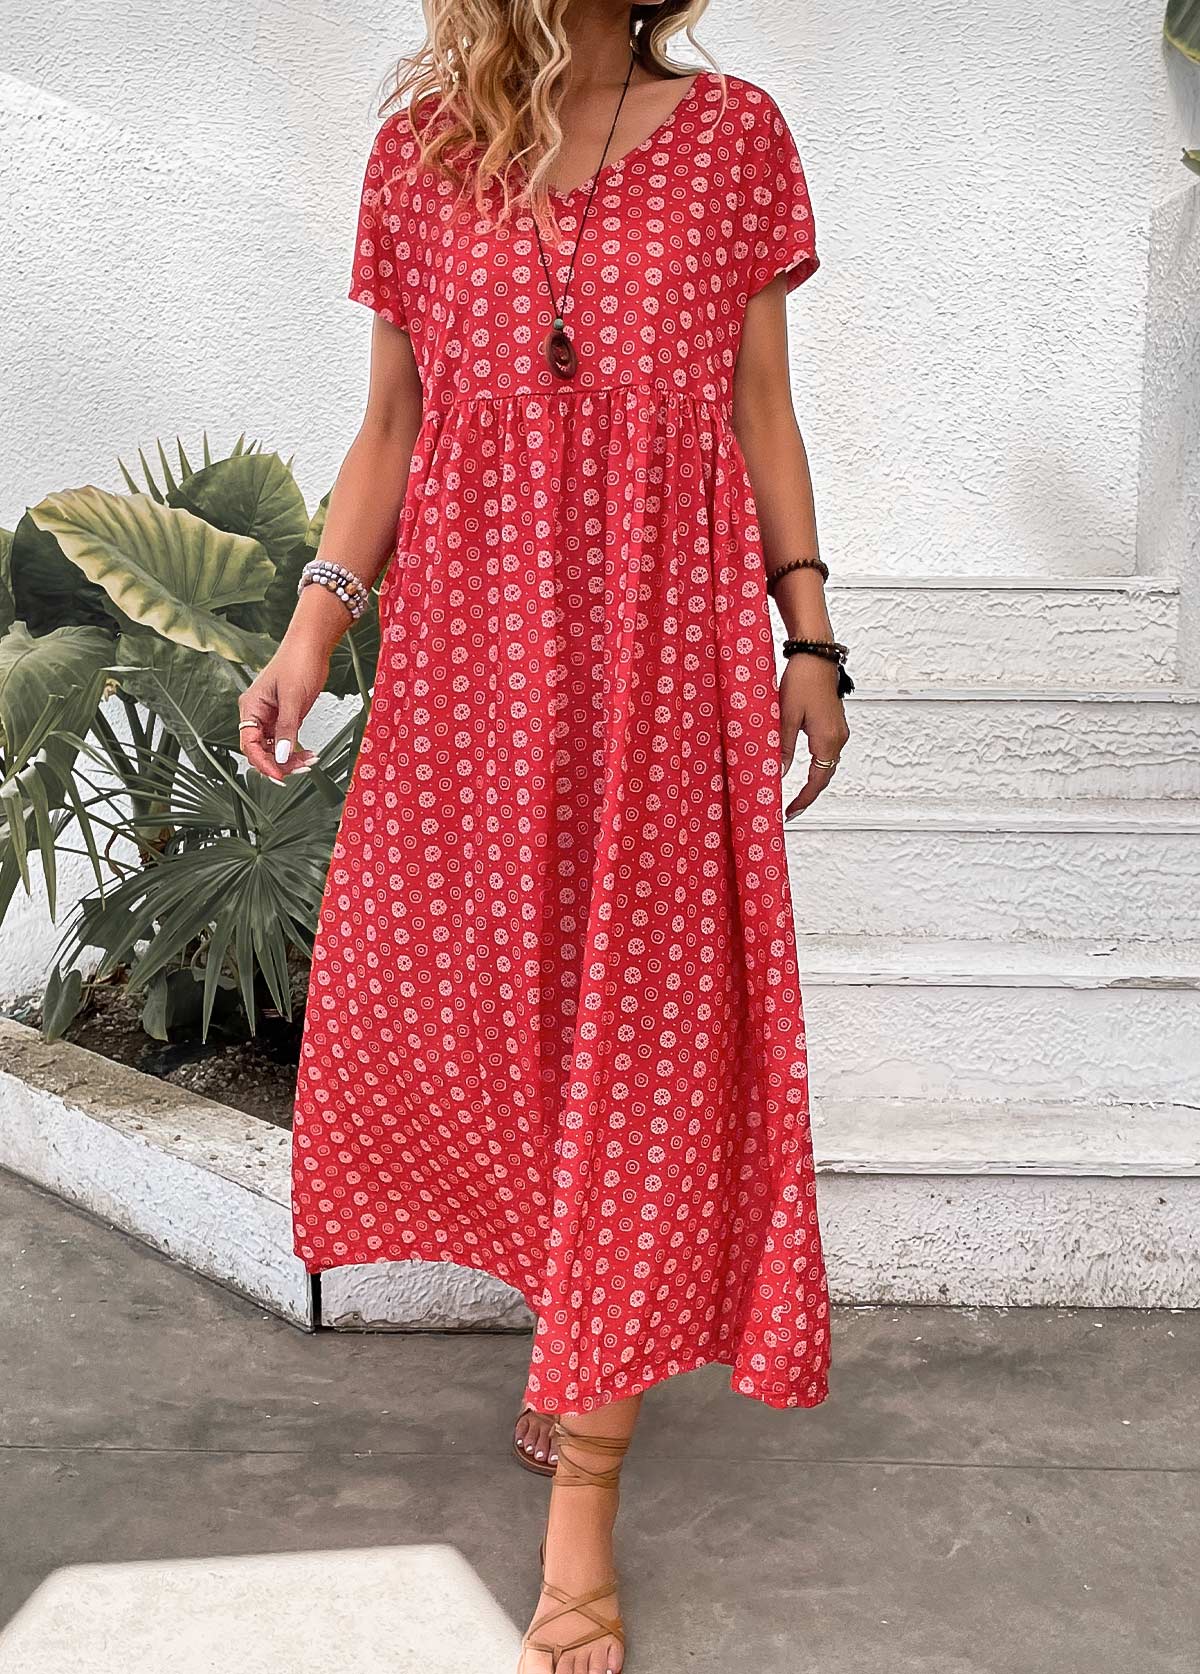 Geometric Print Pocket Red Maxi A Line Dress